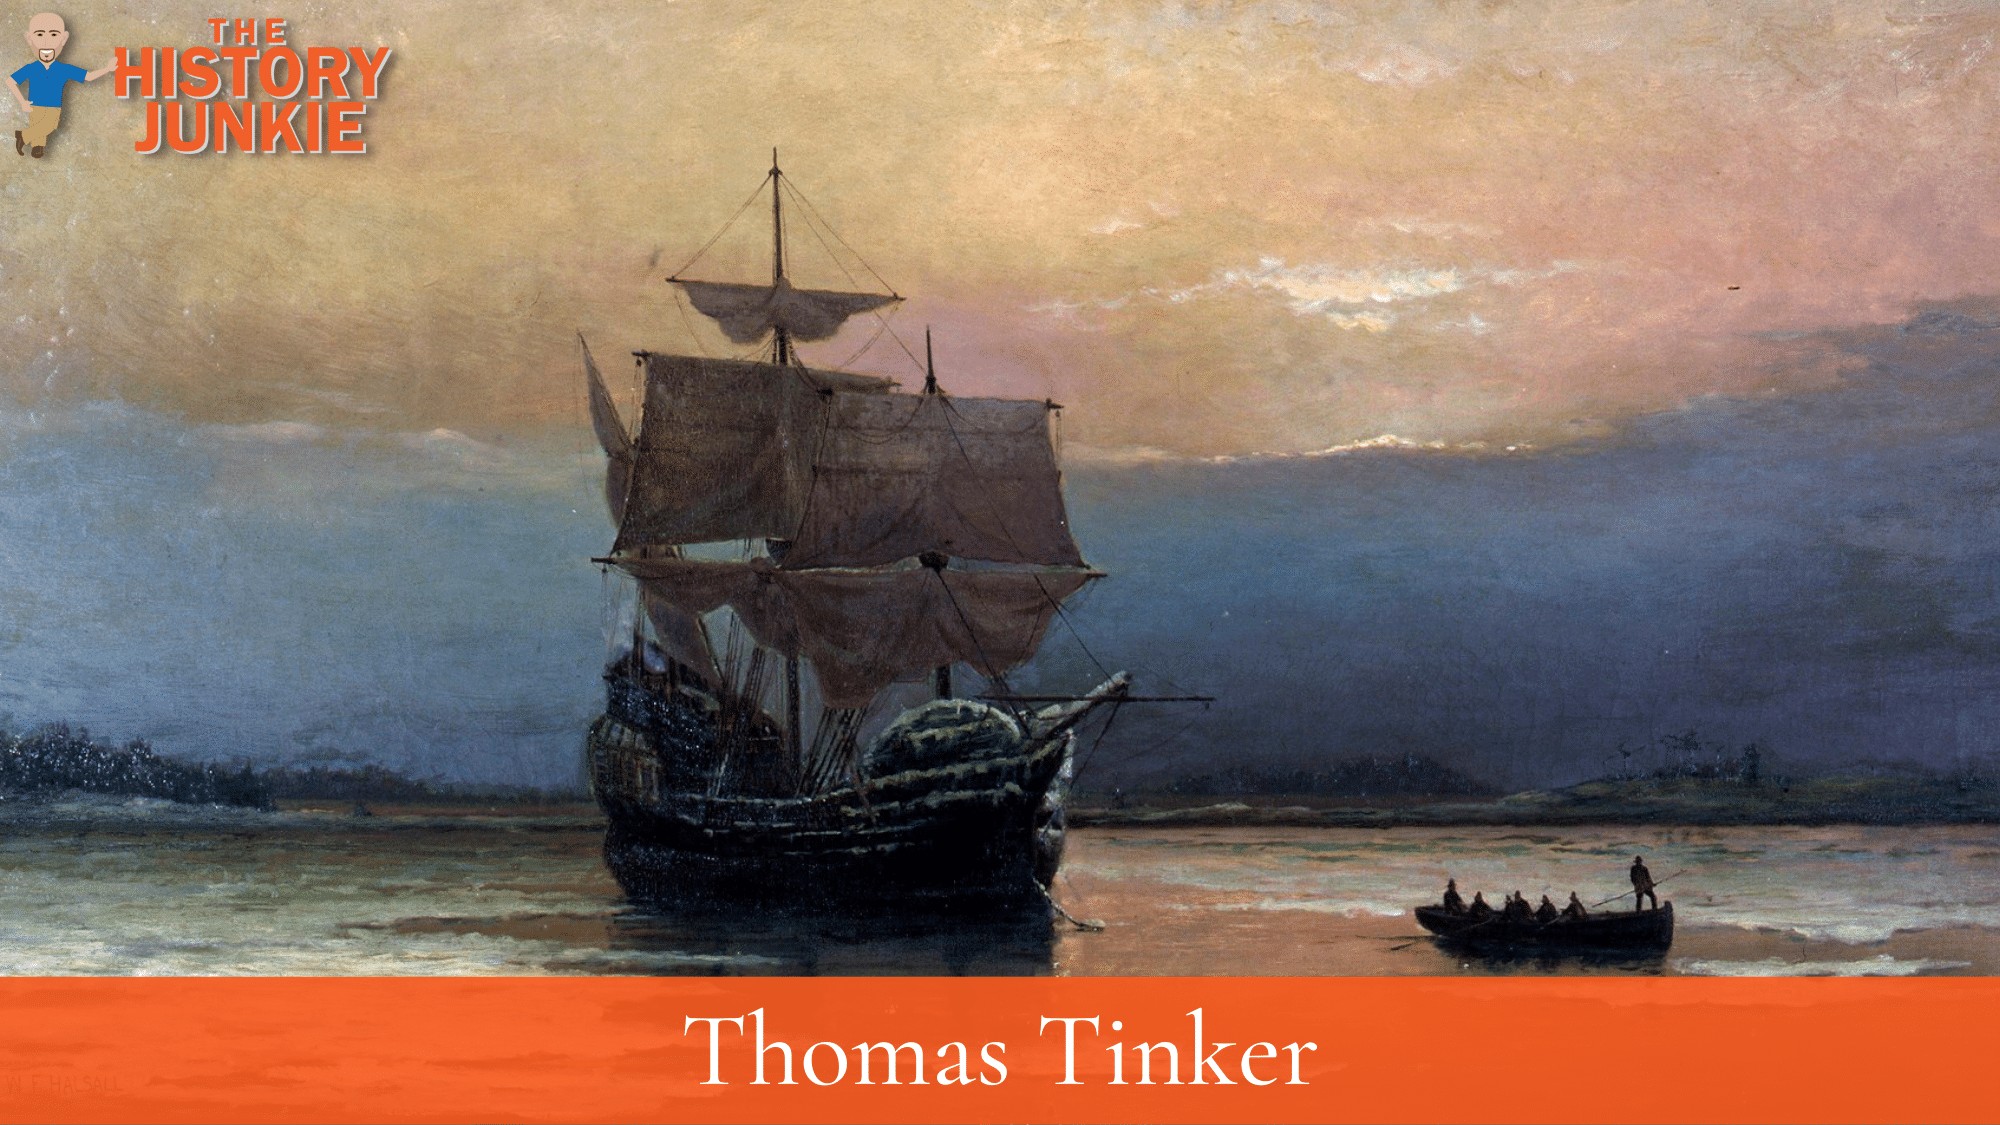 Thomas Tinker